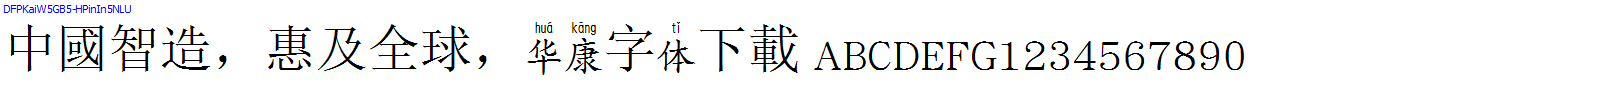 華康字體DFPKaiW5GB5-HPinIn5NLU.TTF